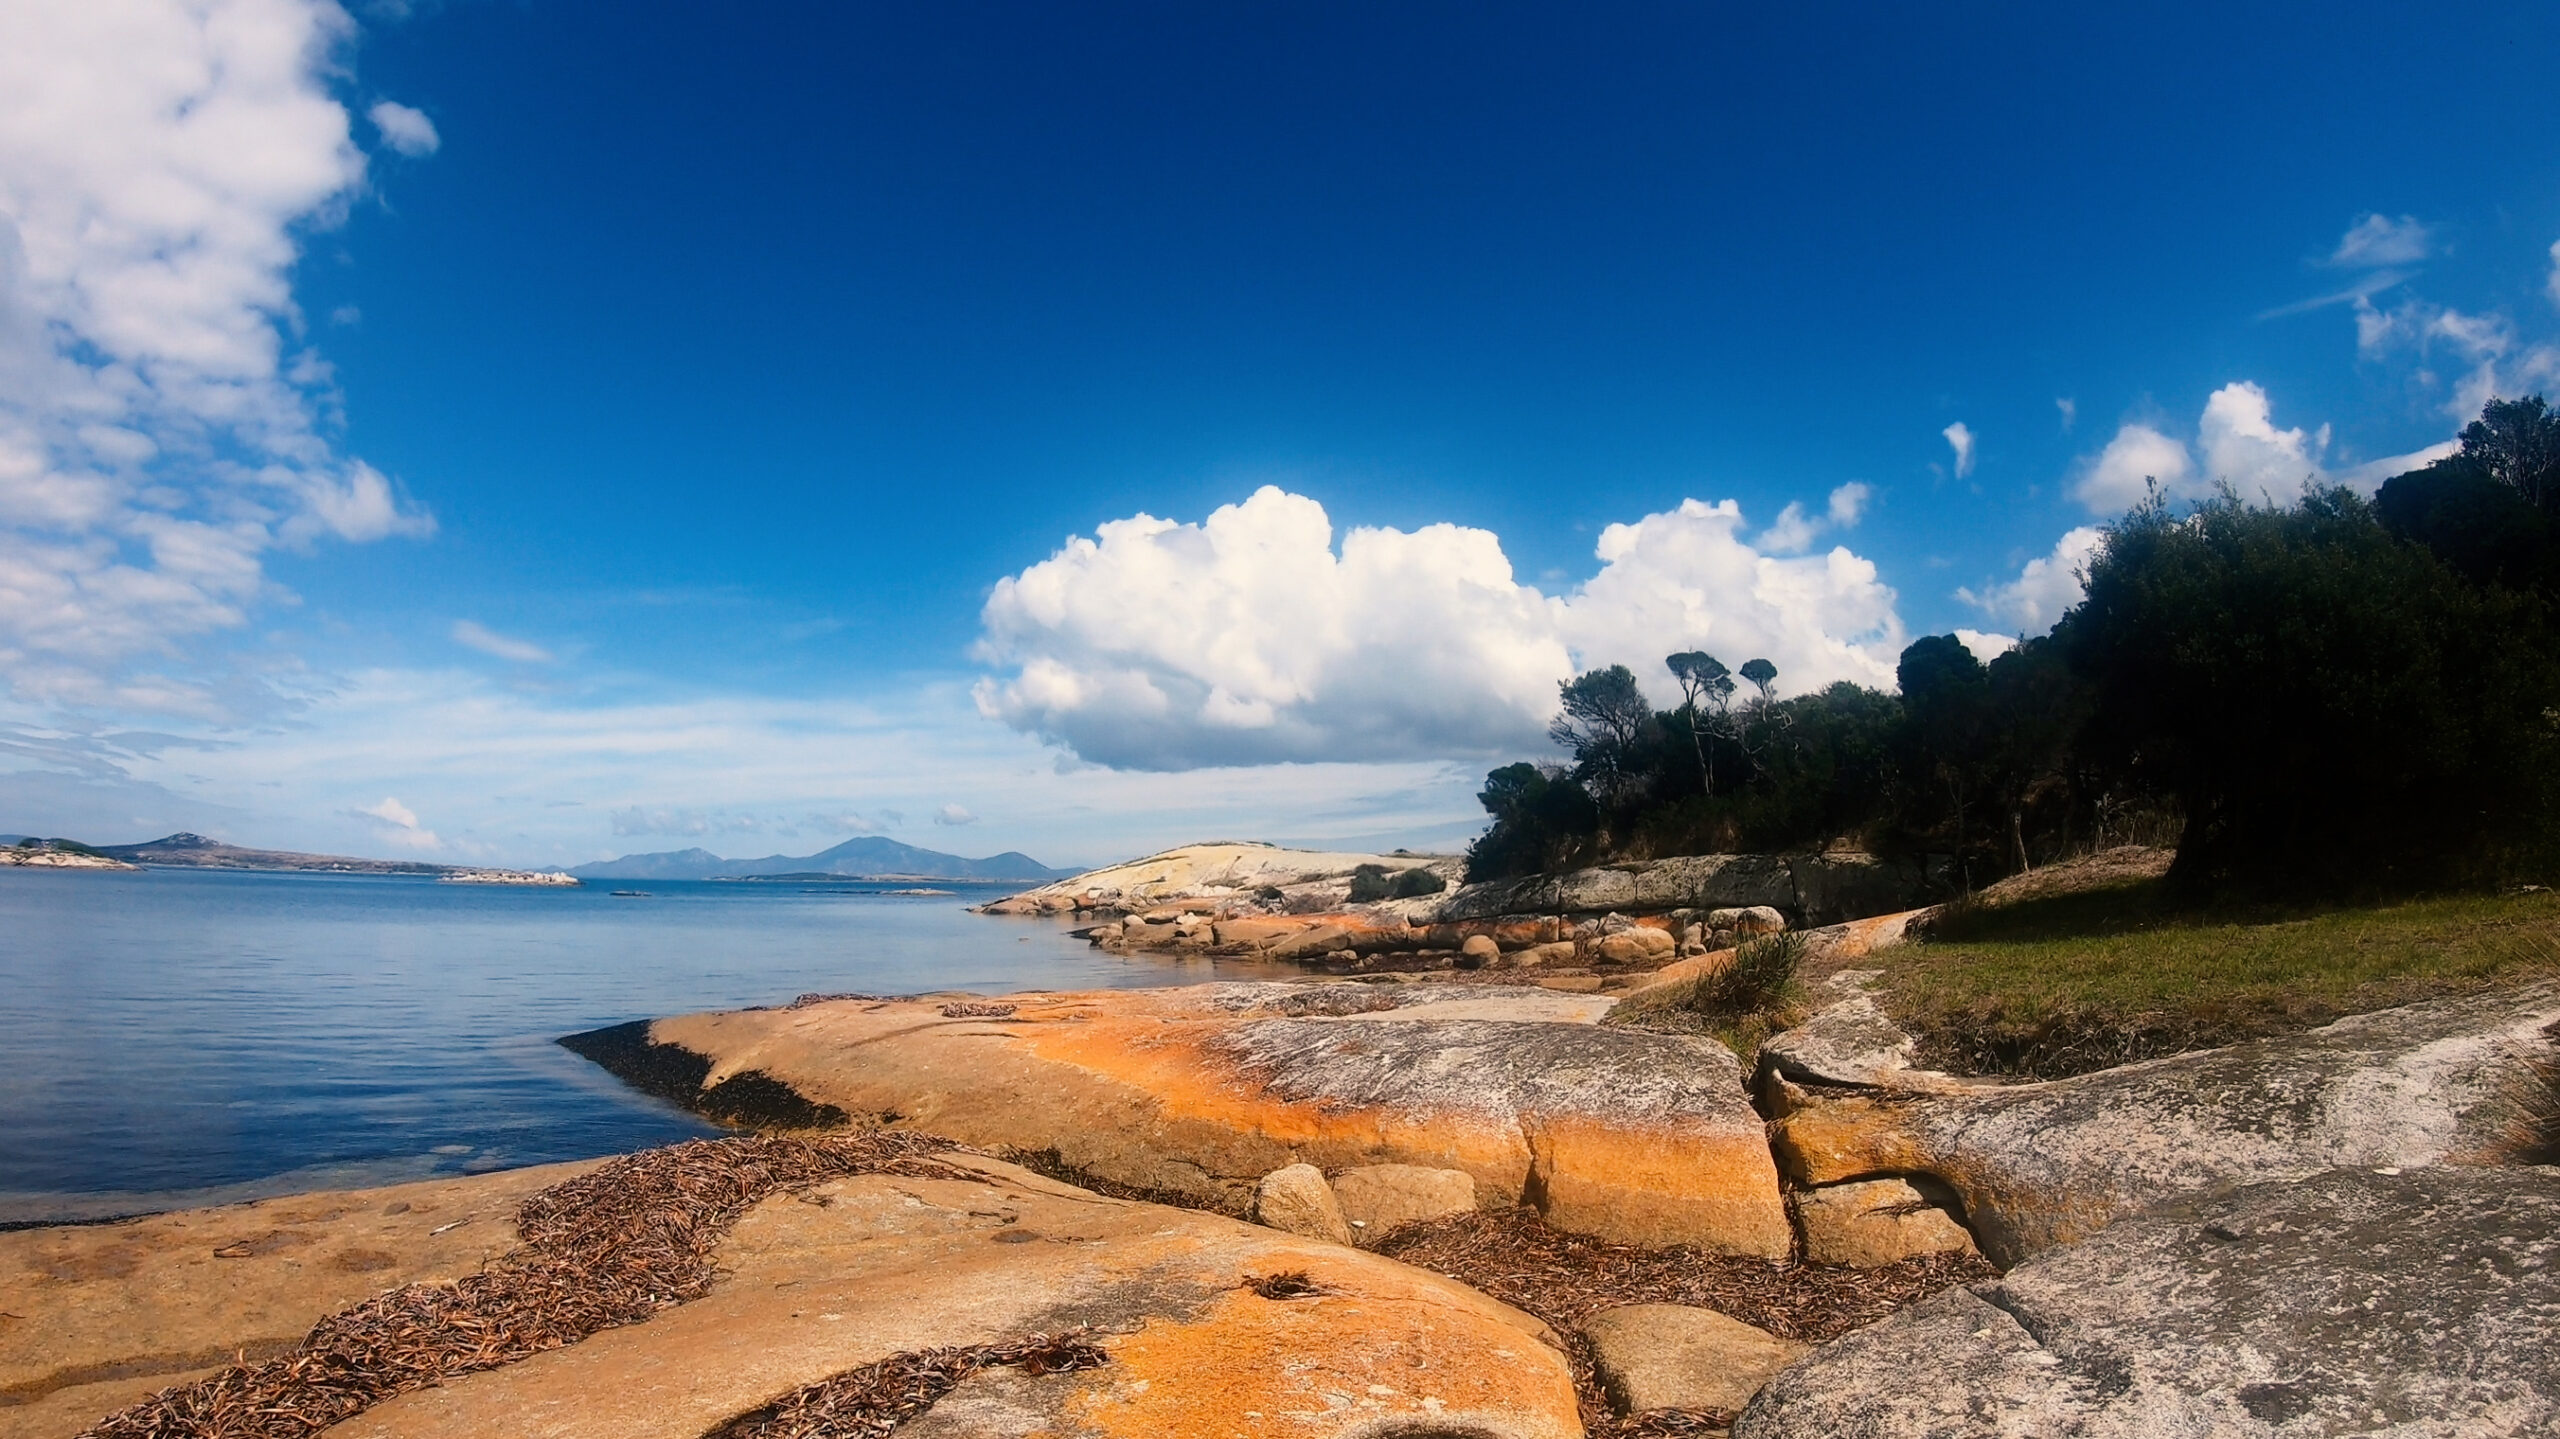 Coastline of flinders island - orange rocks